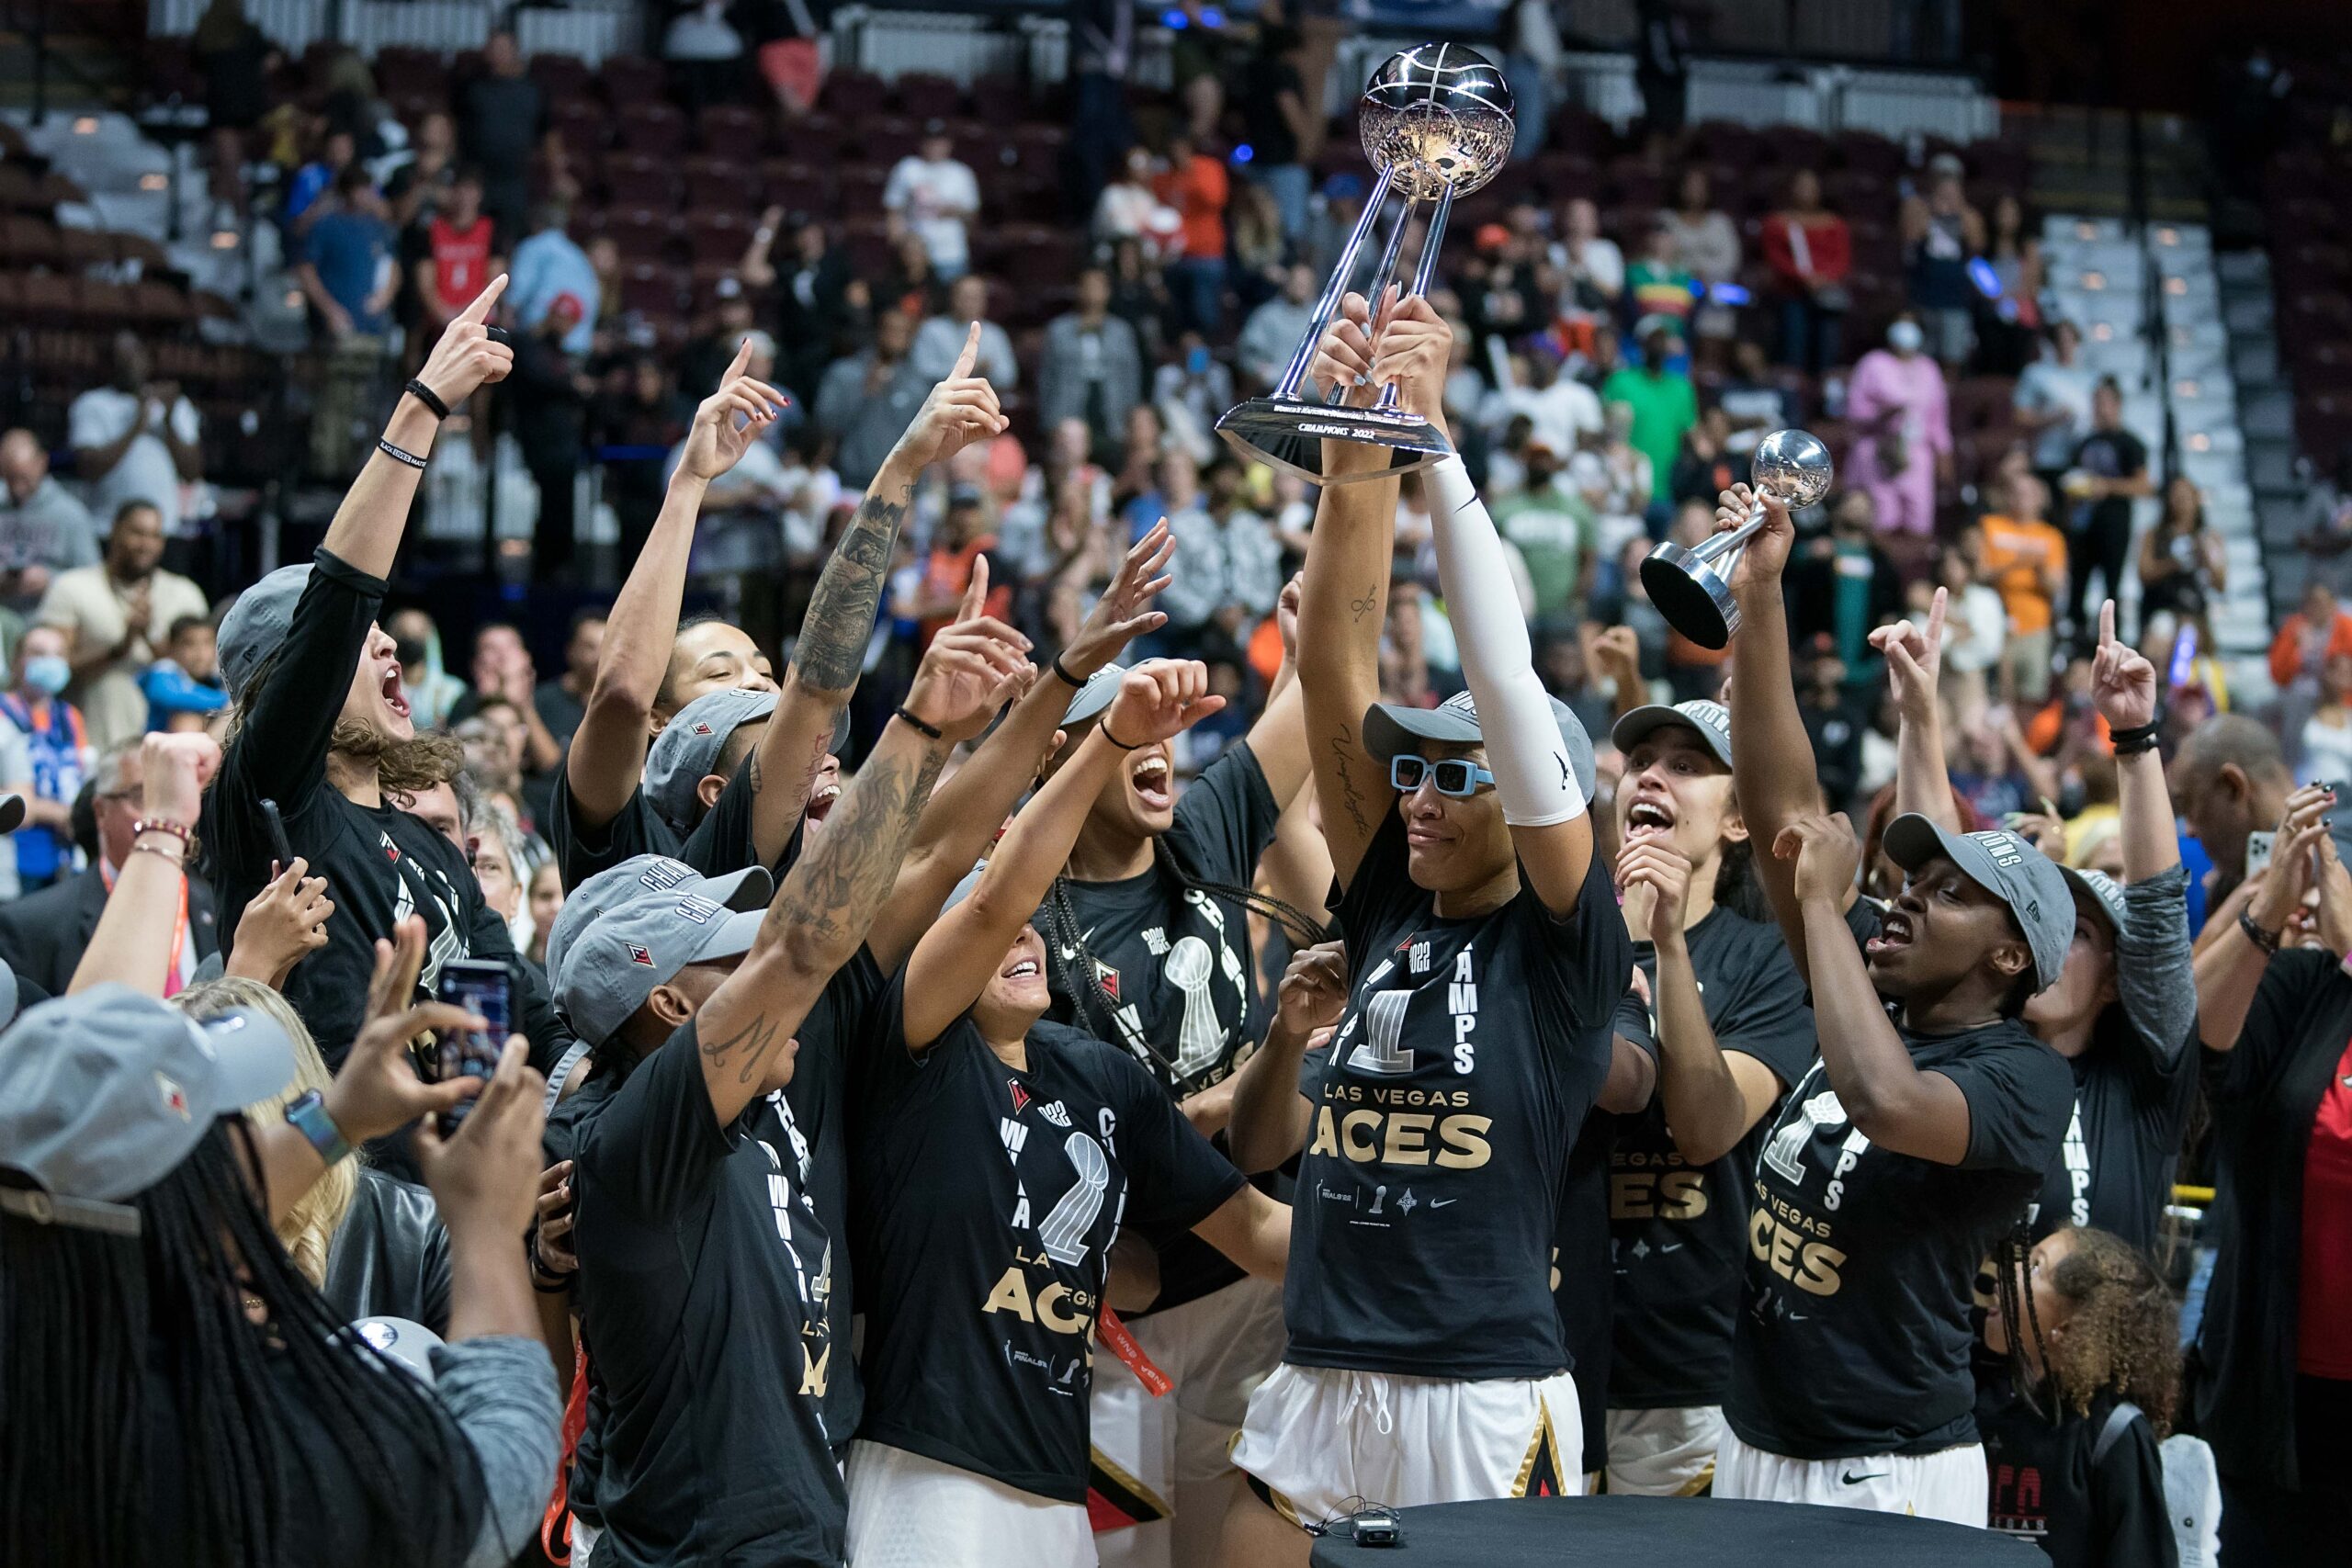 WBB Daily Briefing: Las Vegas Aces capture WNBA title